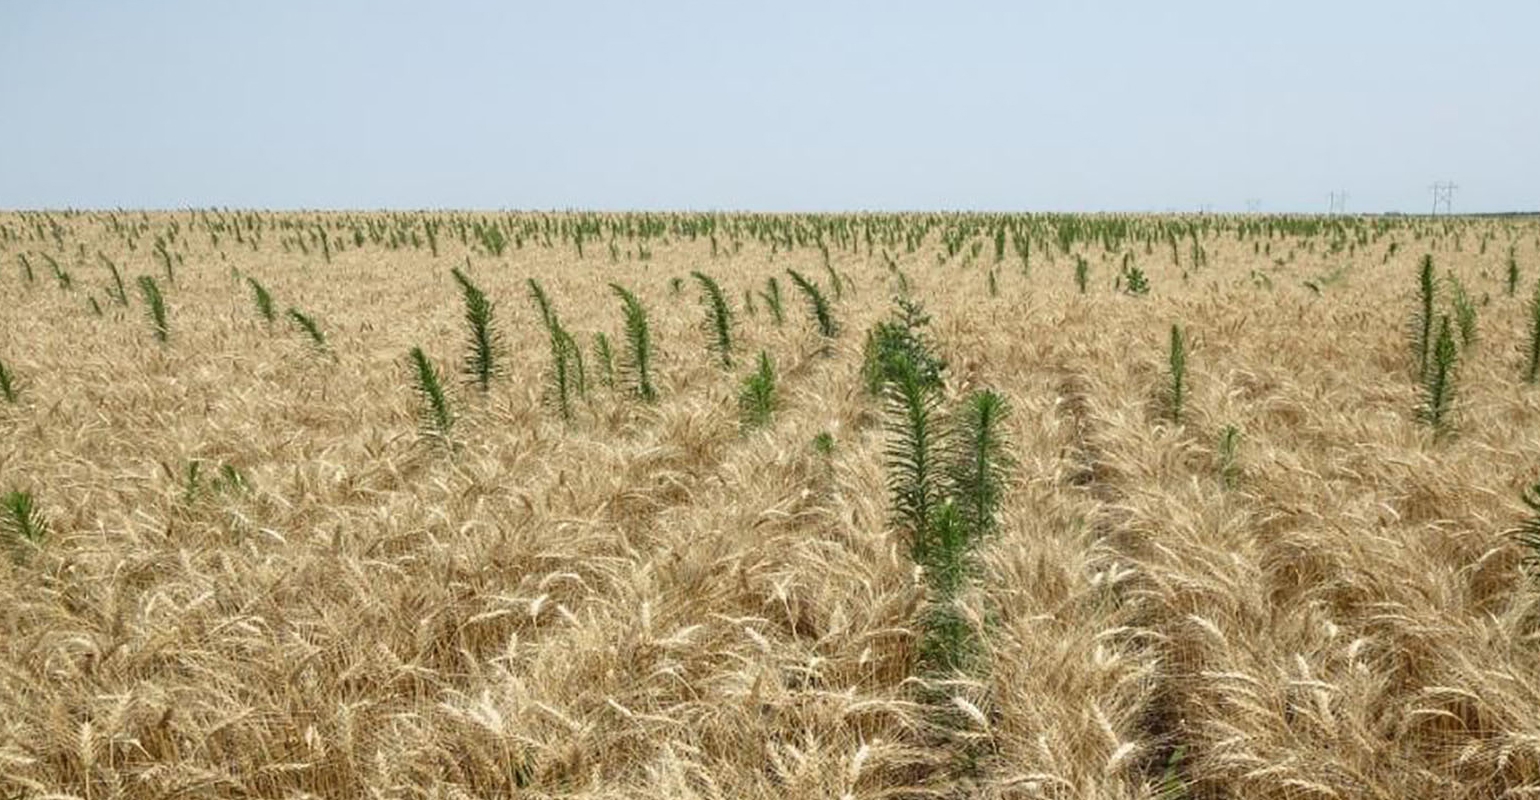 winter-wheat-marestail-weeds-post-harvest-bob-klein-0716f1-1448a_0_0